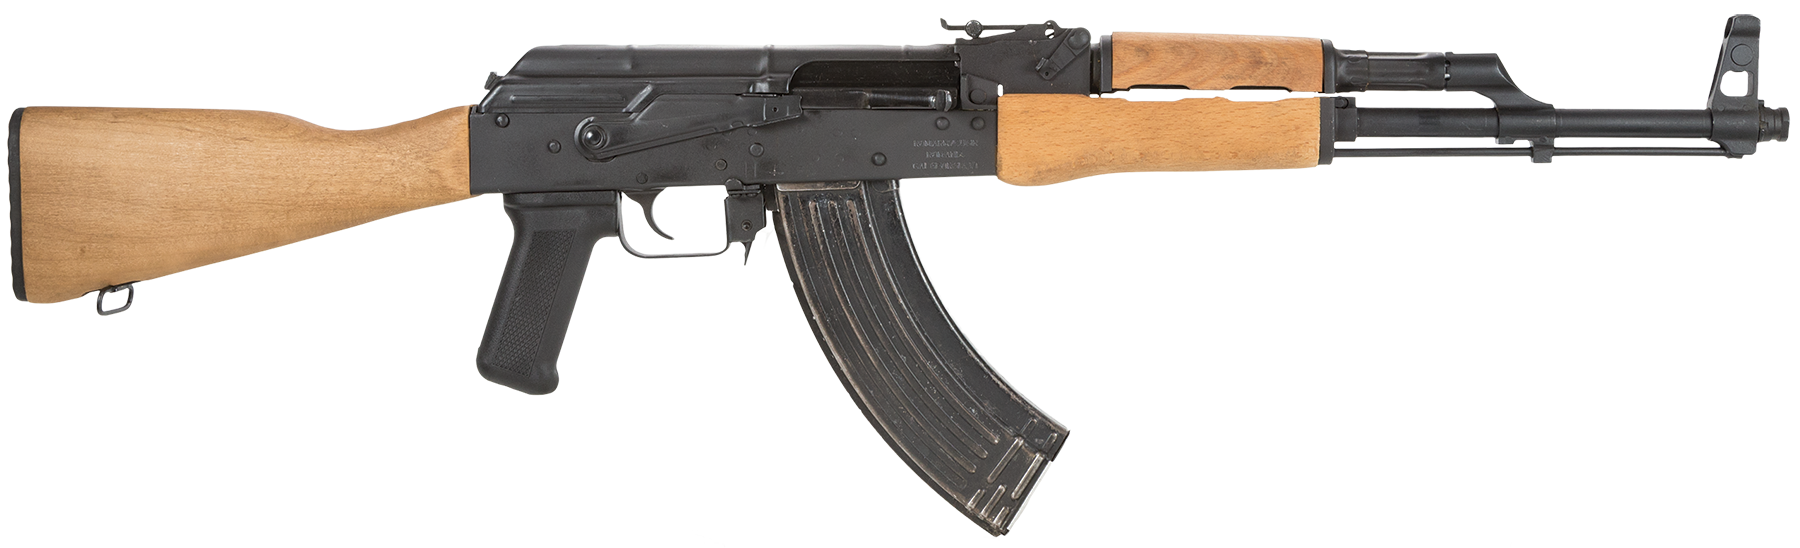 AK-47 Kalaschnikow